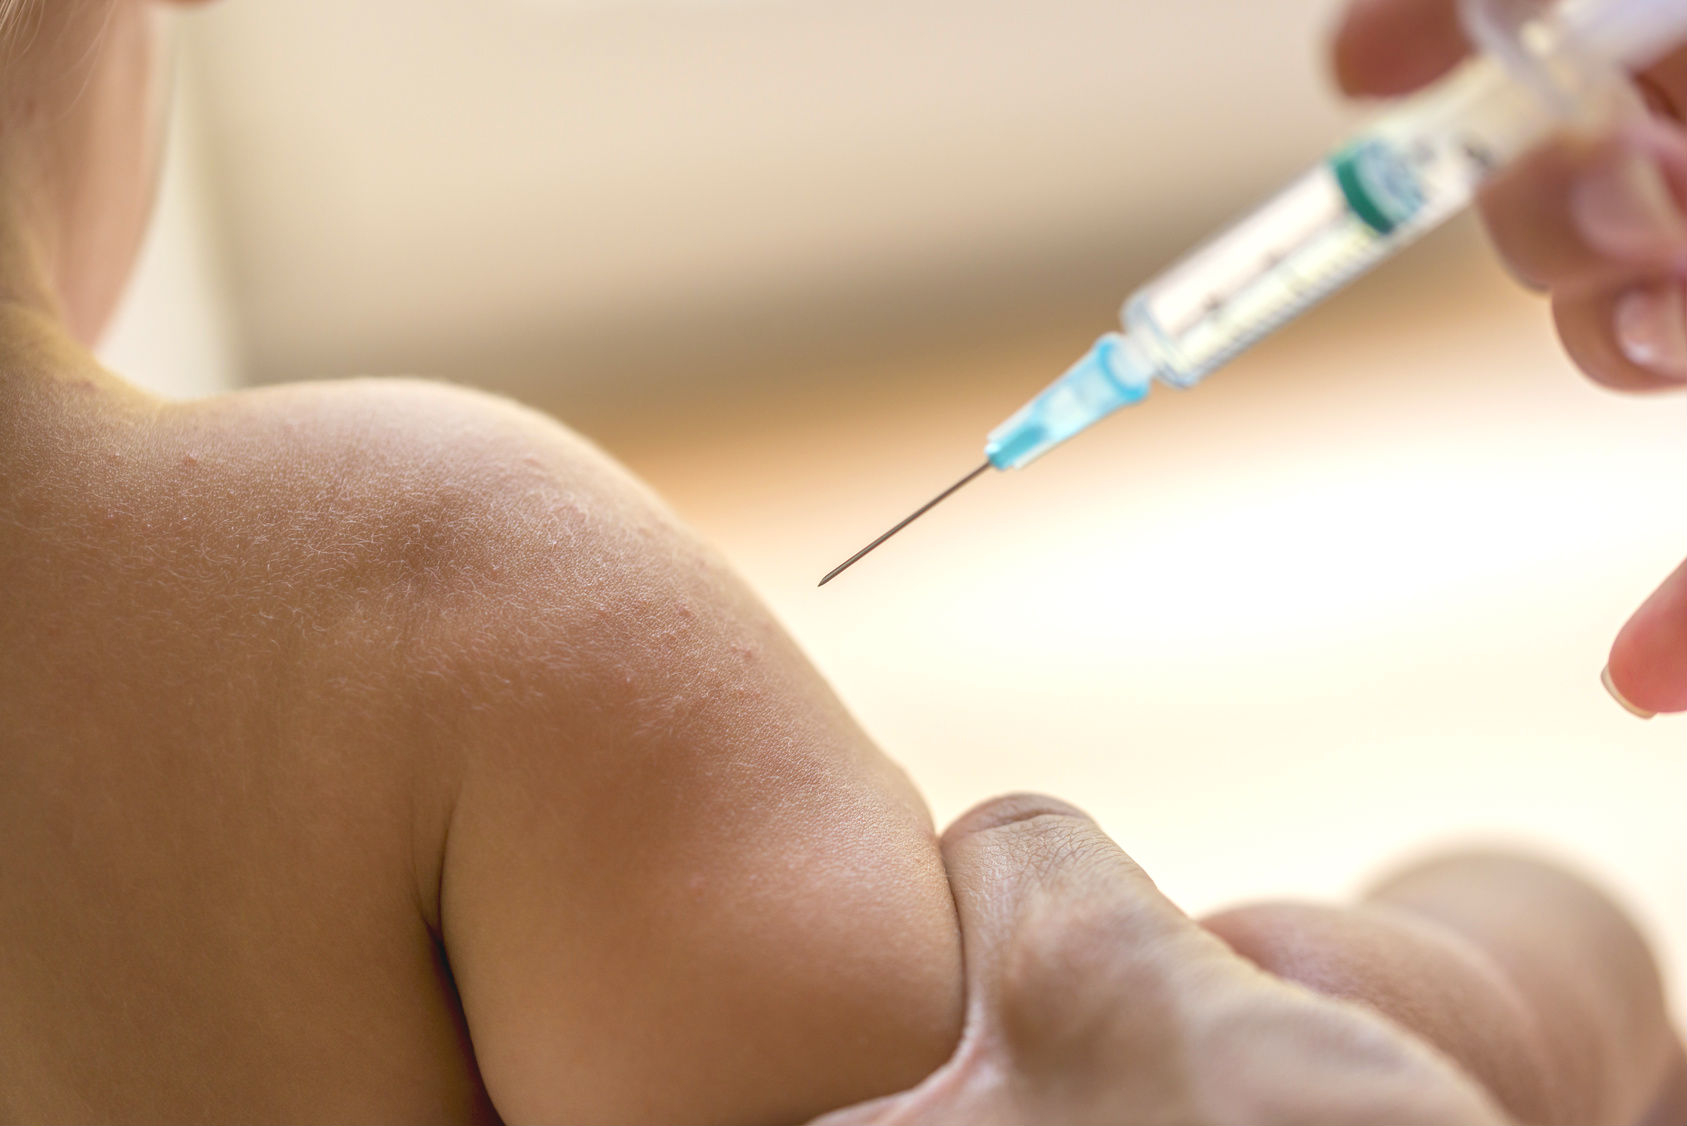 Robert-Koch-Institut: Standard-Impfstoff gegen aktuelle Grippewelle kaum wirksam